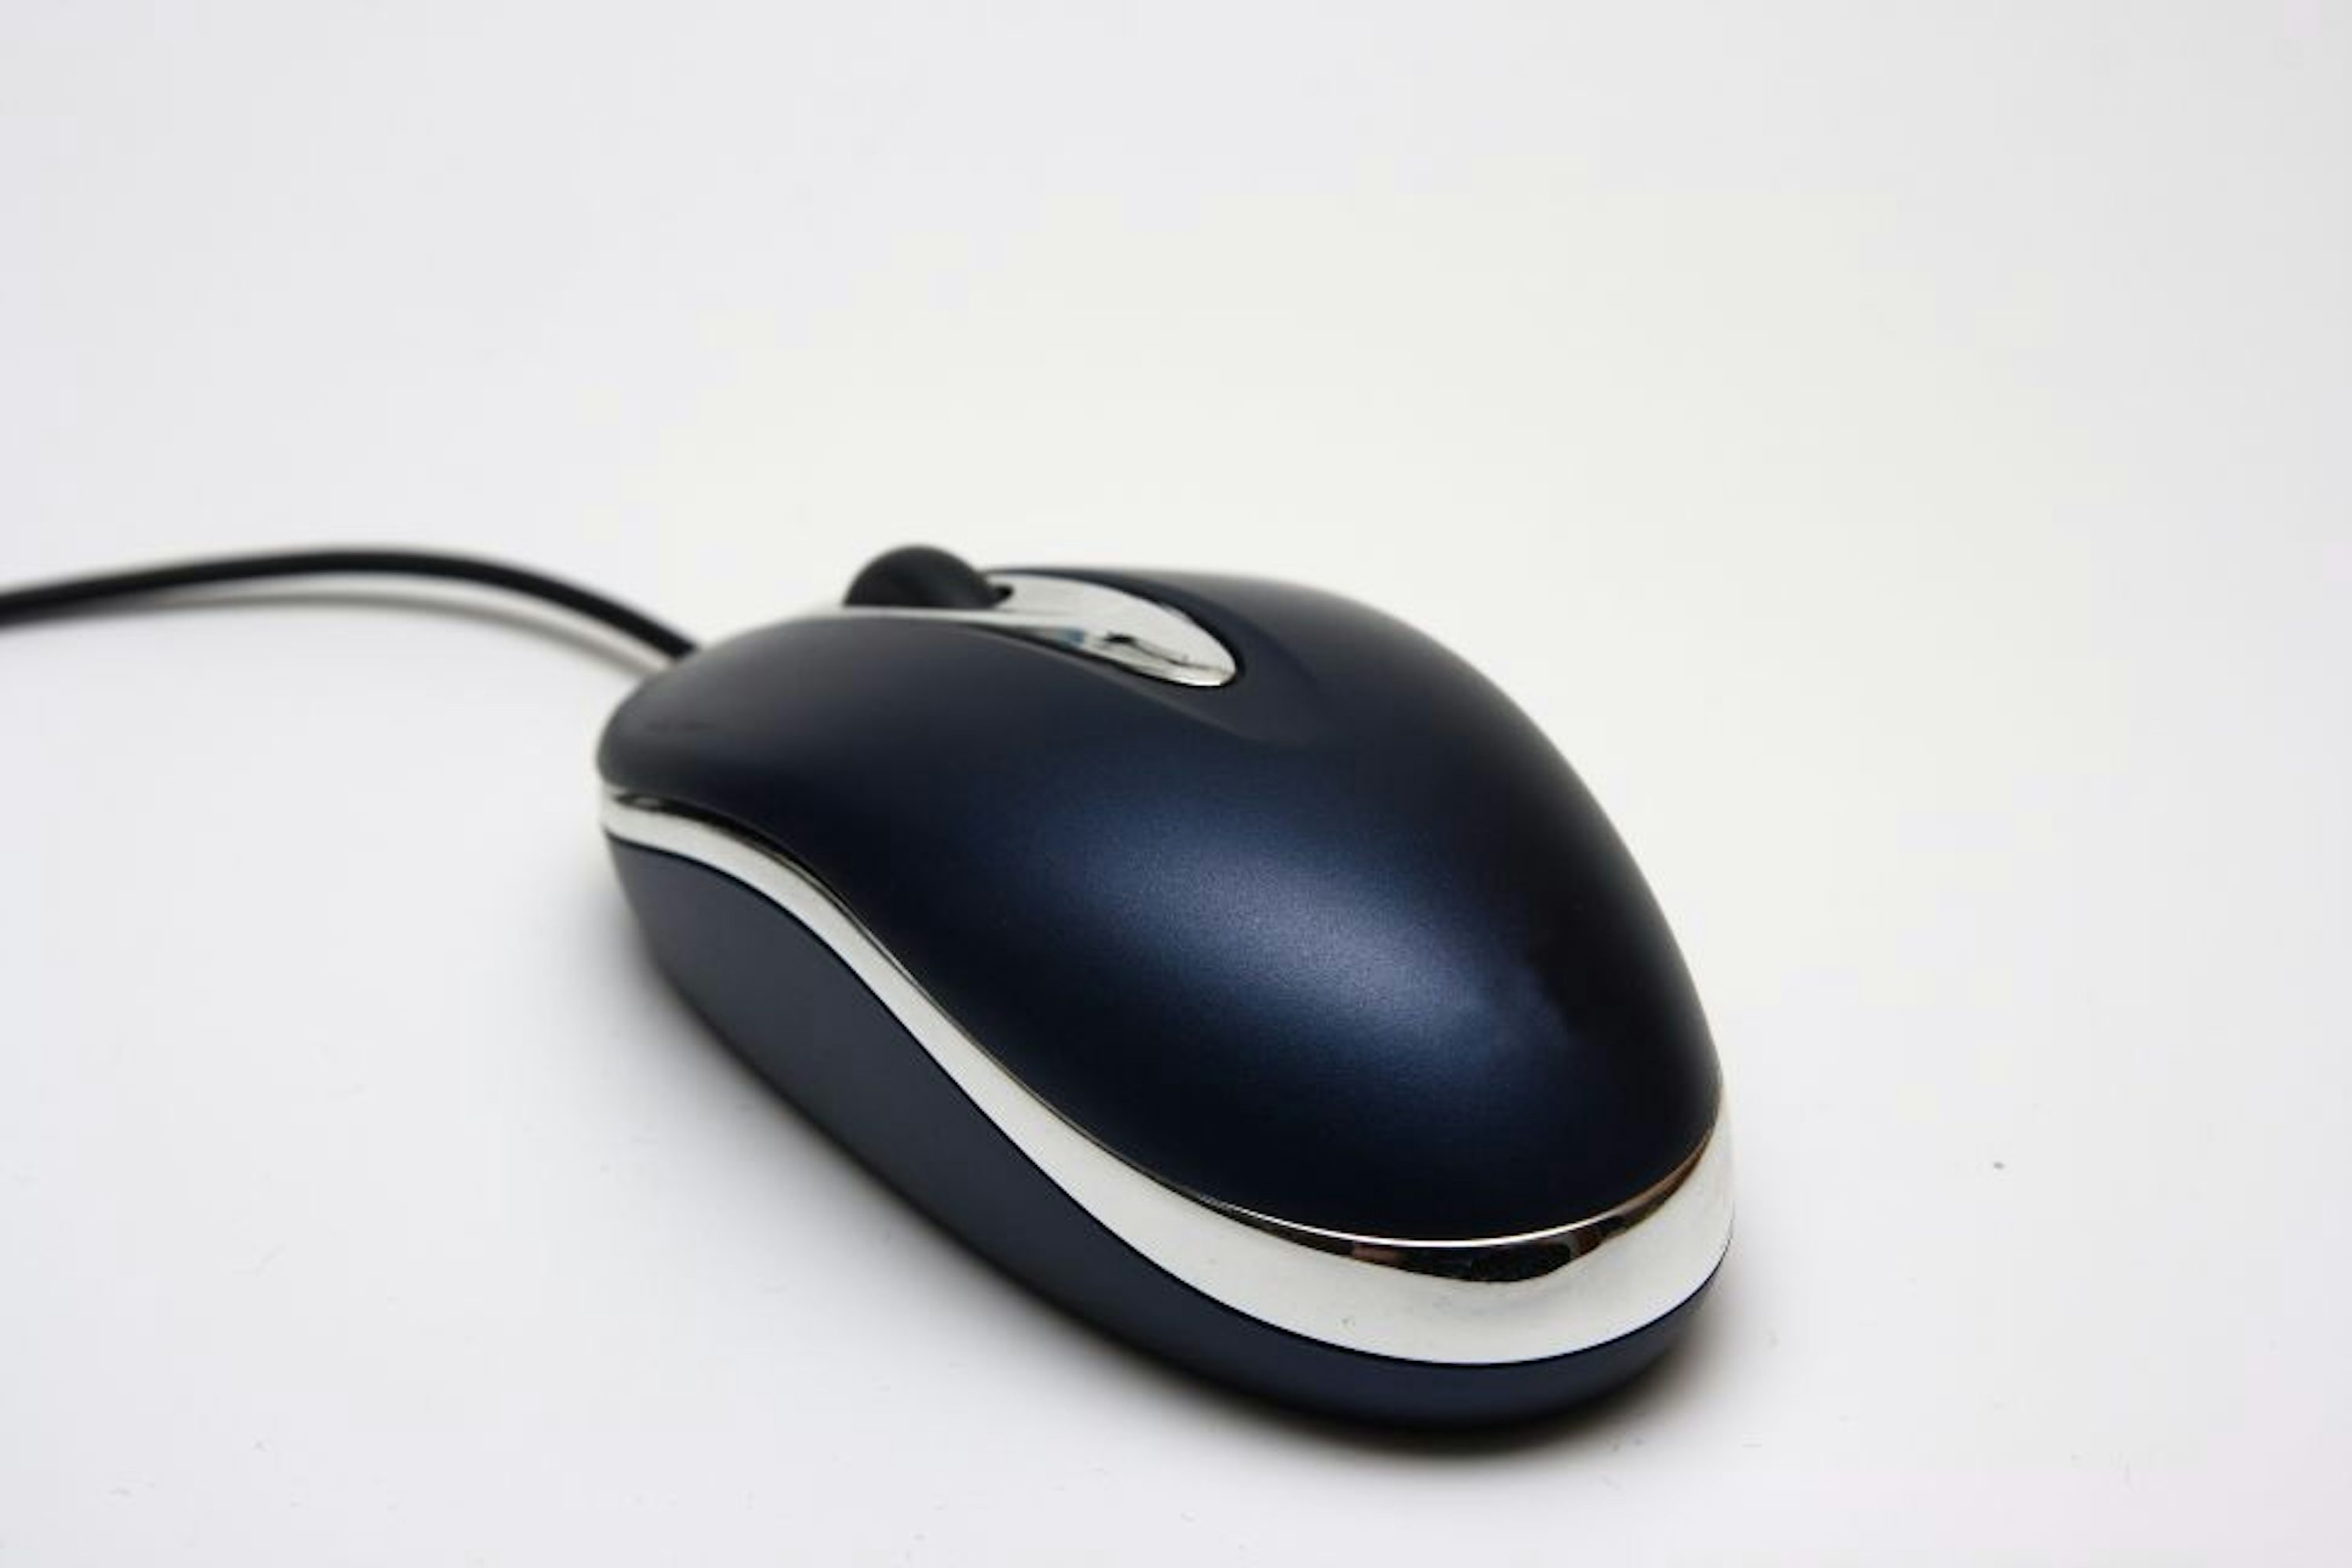 Фото компьютерной мышки на белом фоне